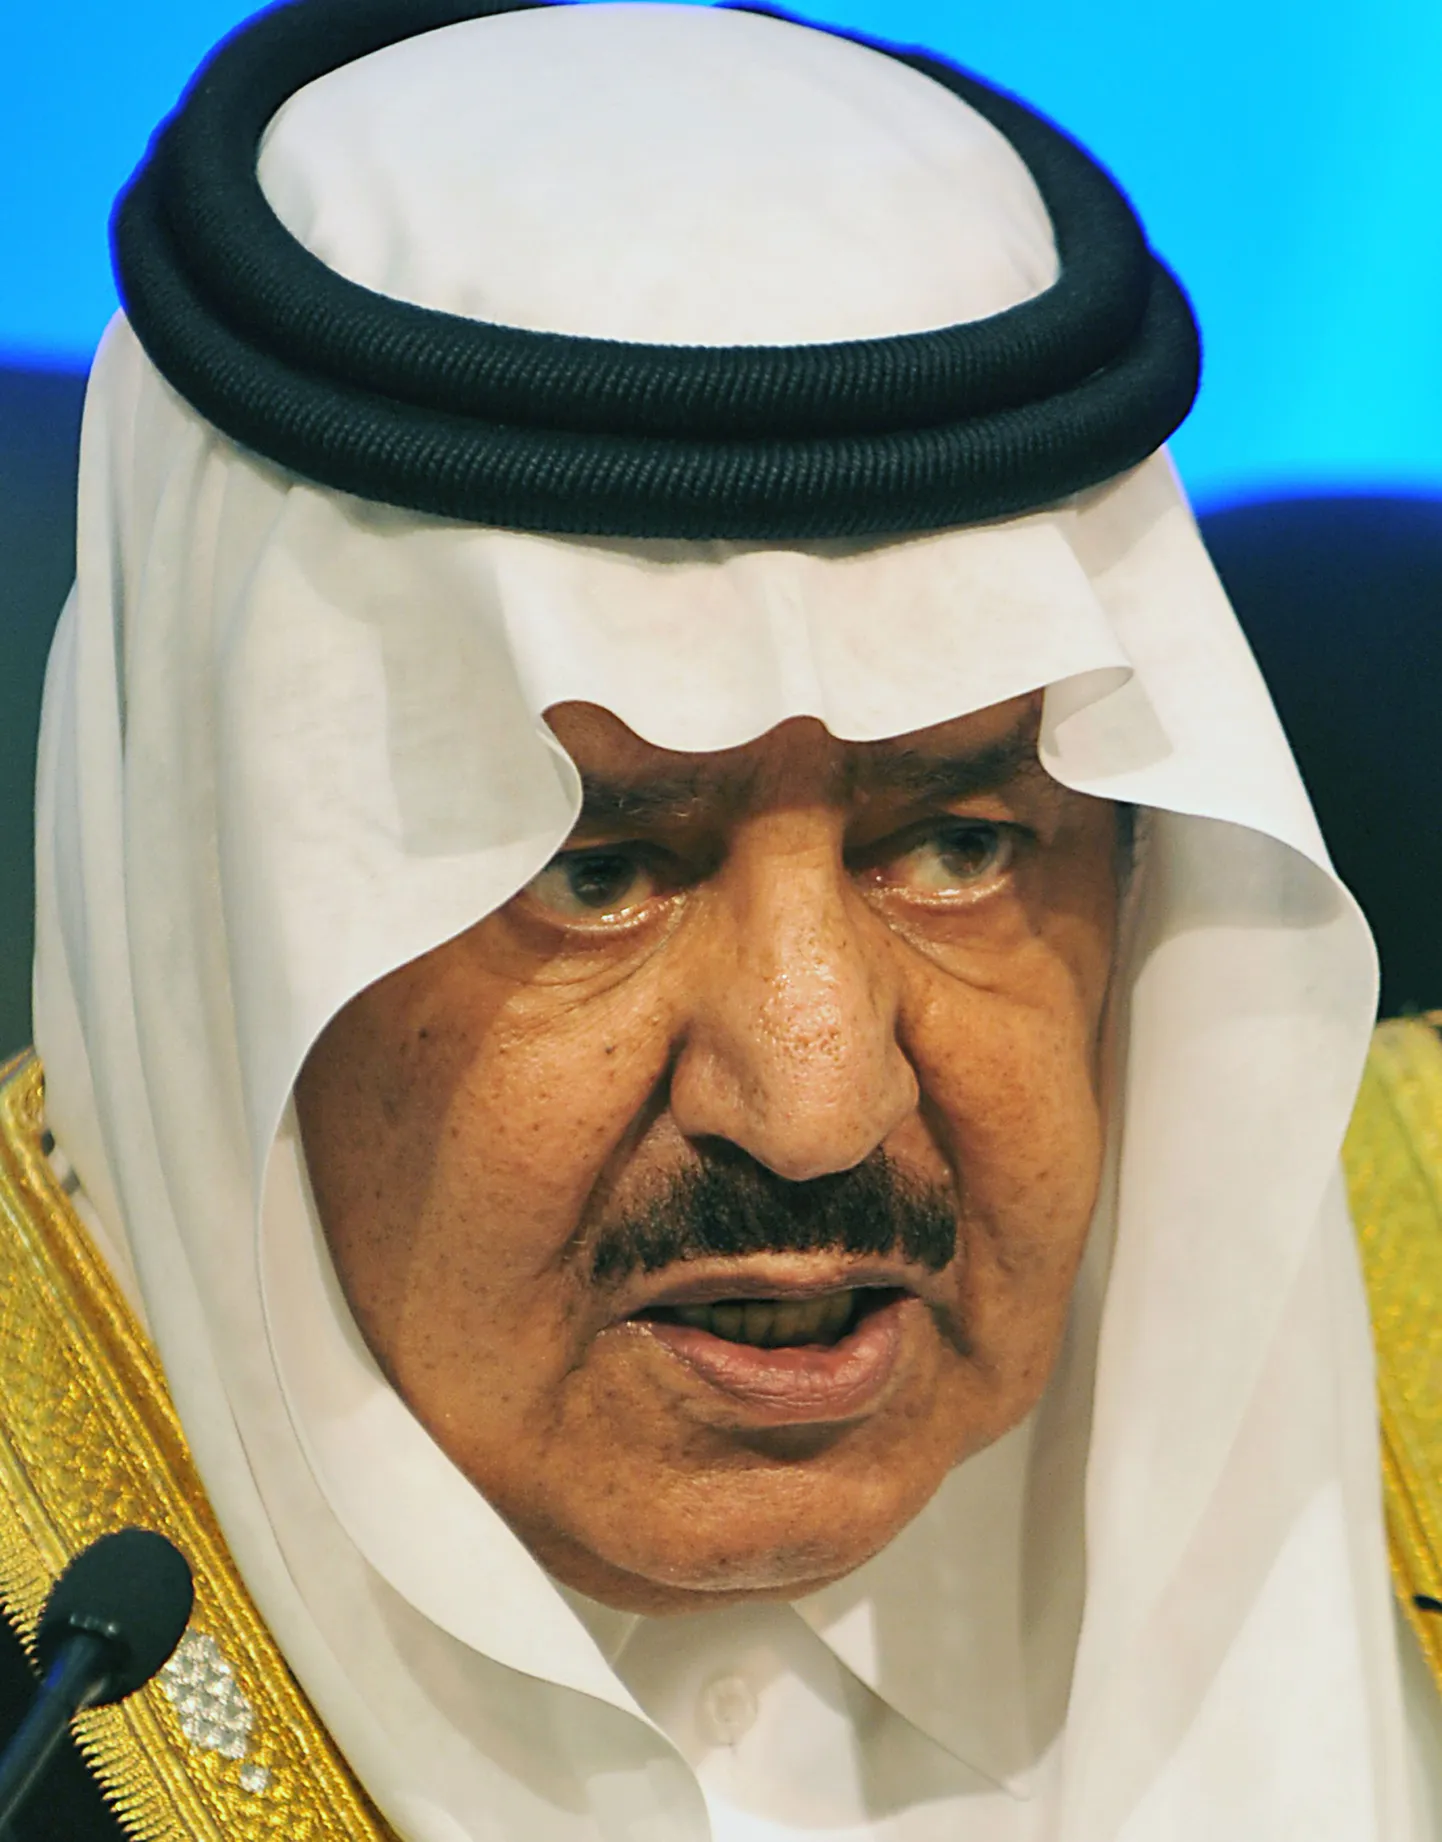 Наследник саудовского престола принц Наиф бин Абдель Азиз аль-Сауд скончался